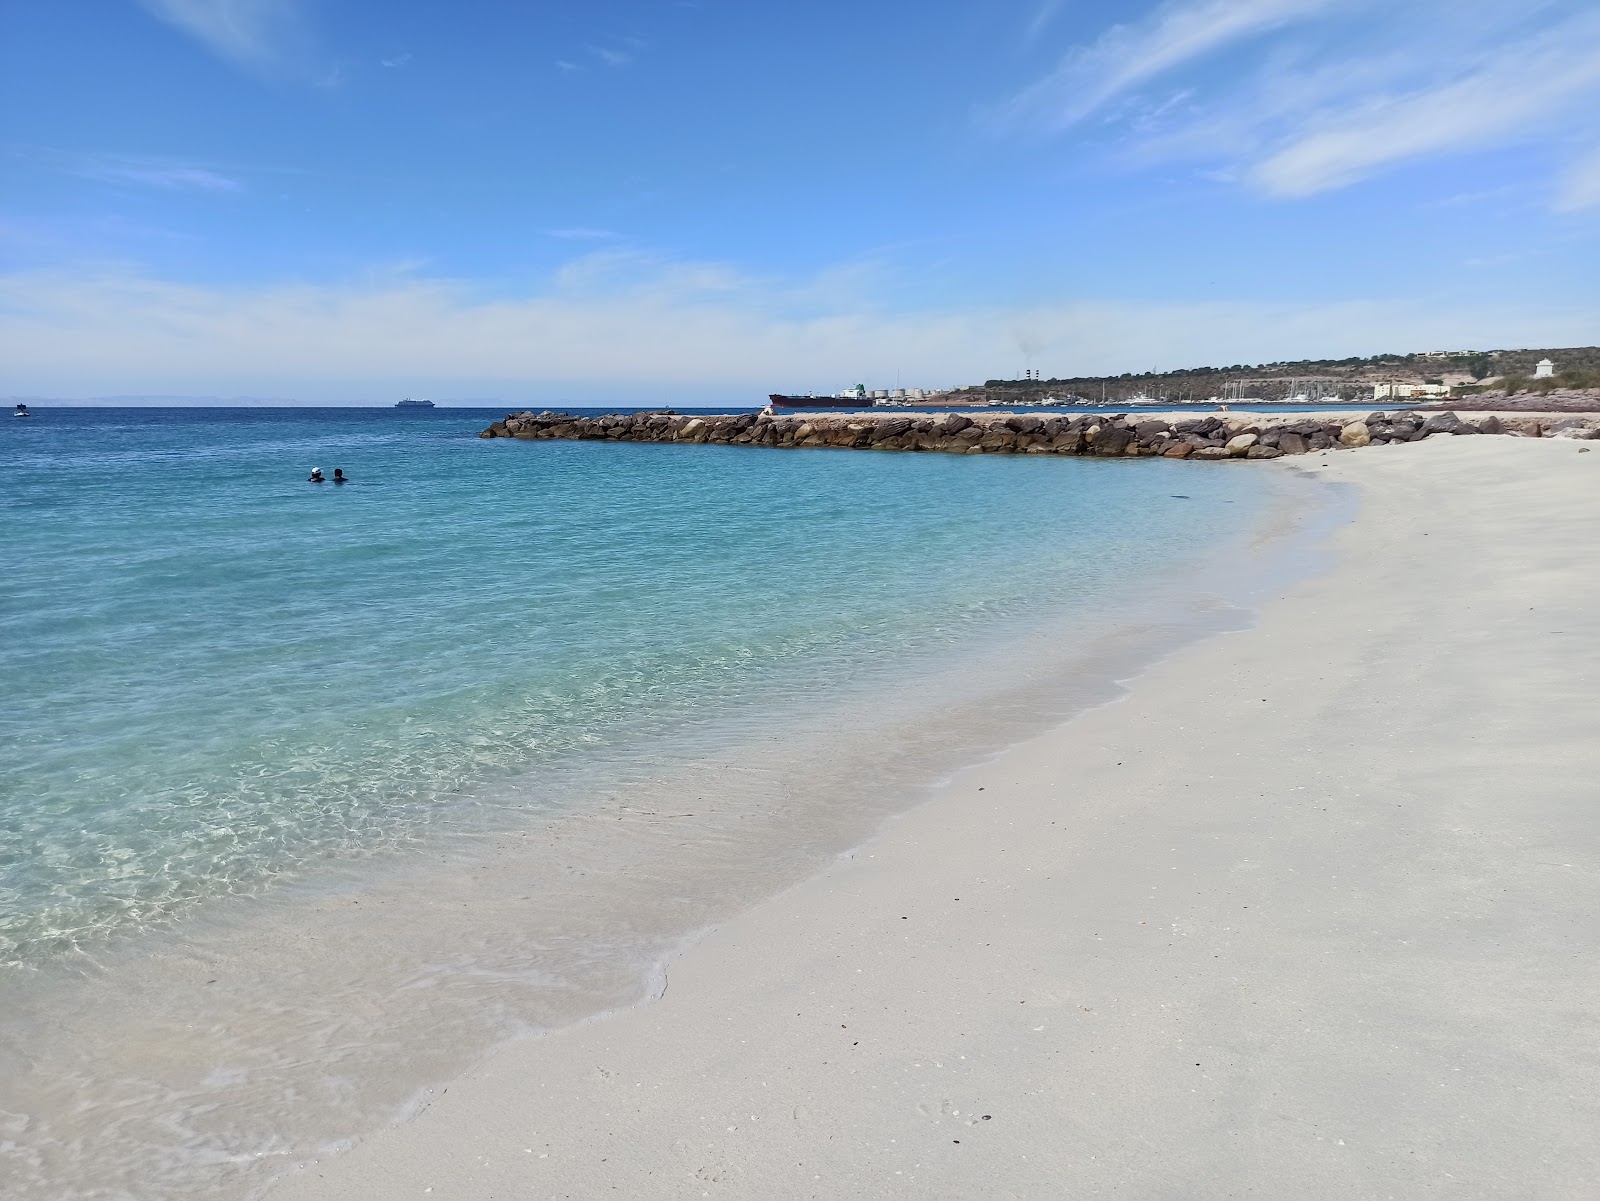 Playa El Caimancito'in fotoğrafı geniş plaj ile birlikte